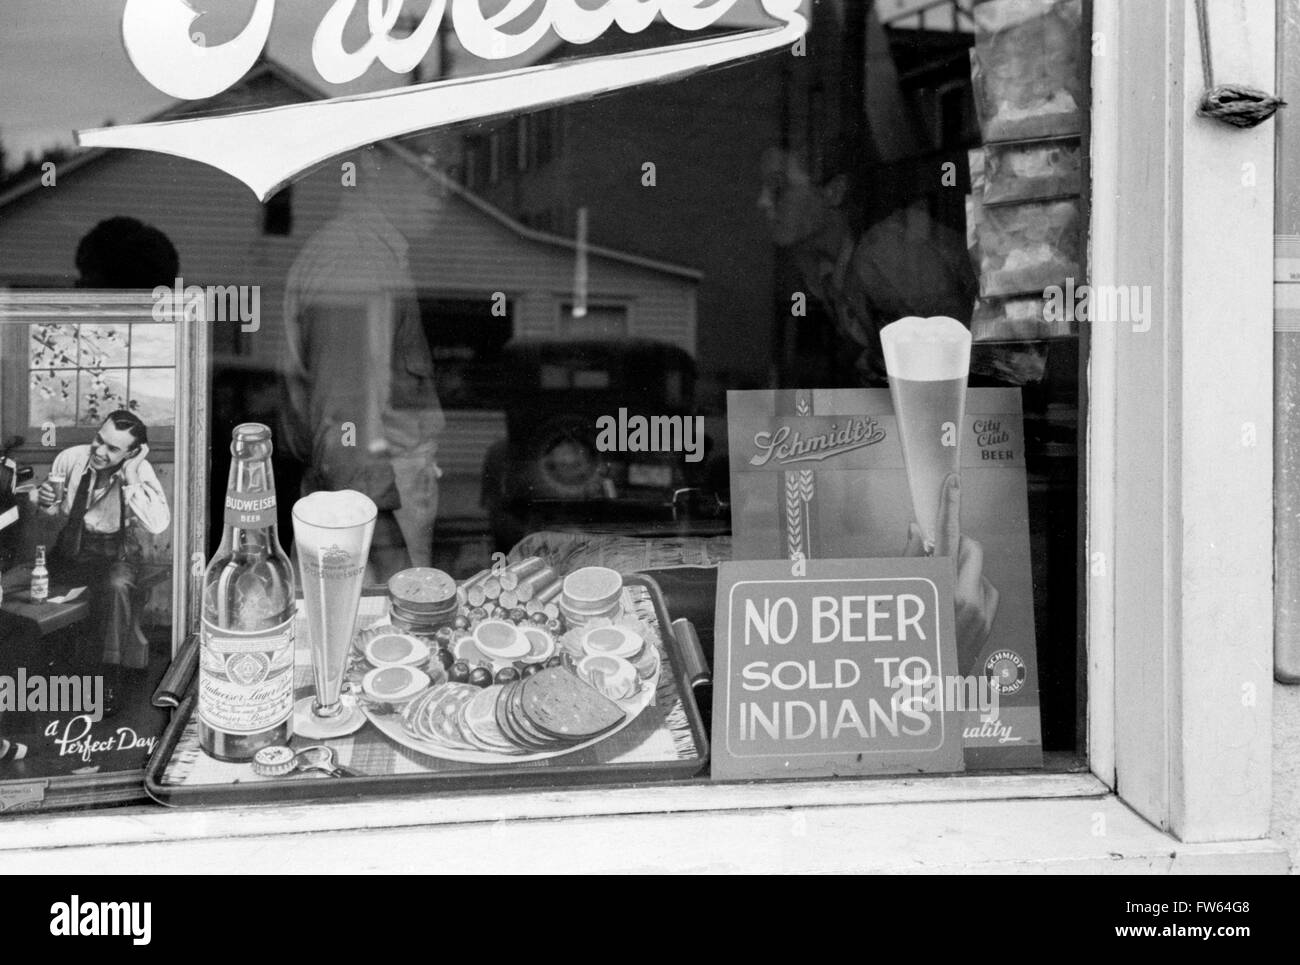 Rassendiskriminierung. "Kein Bier verkauft, Indianer" anmelden, das Fenster einer Bar in Sisseton, South Dakota, USA. Foto von John Vachon, 1939. Stockfoto